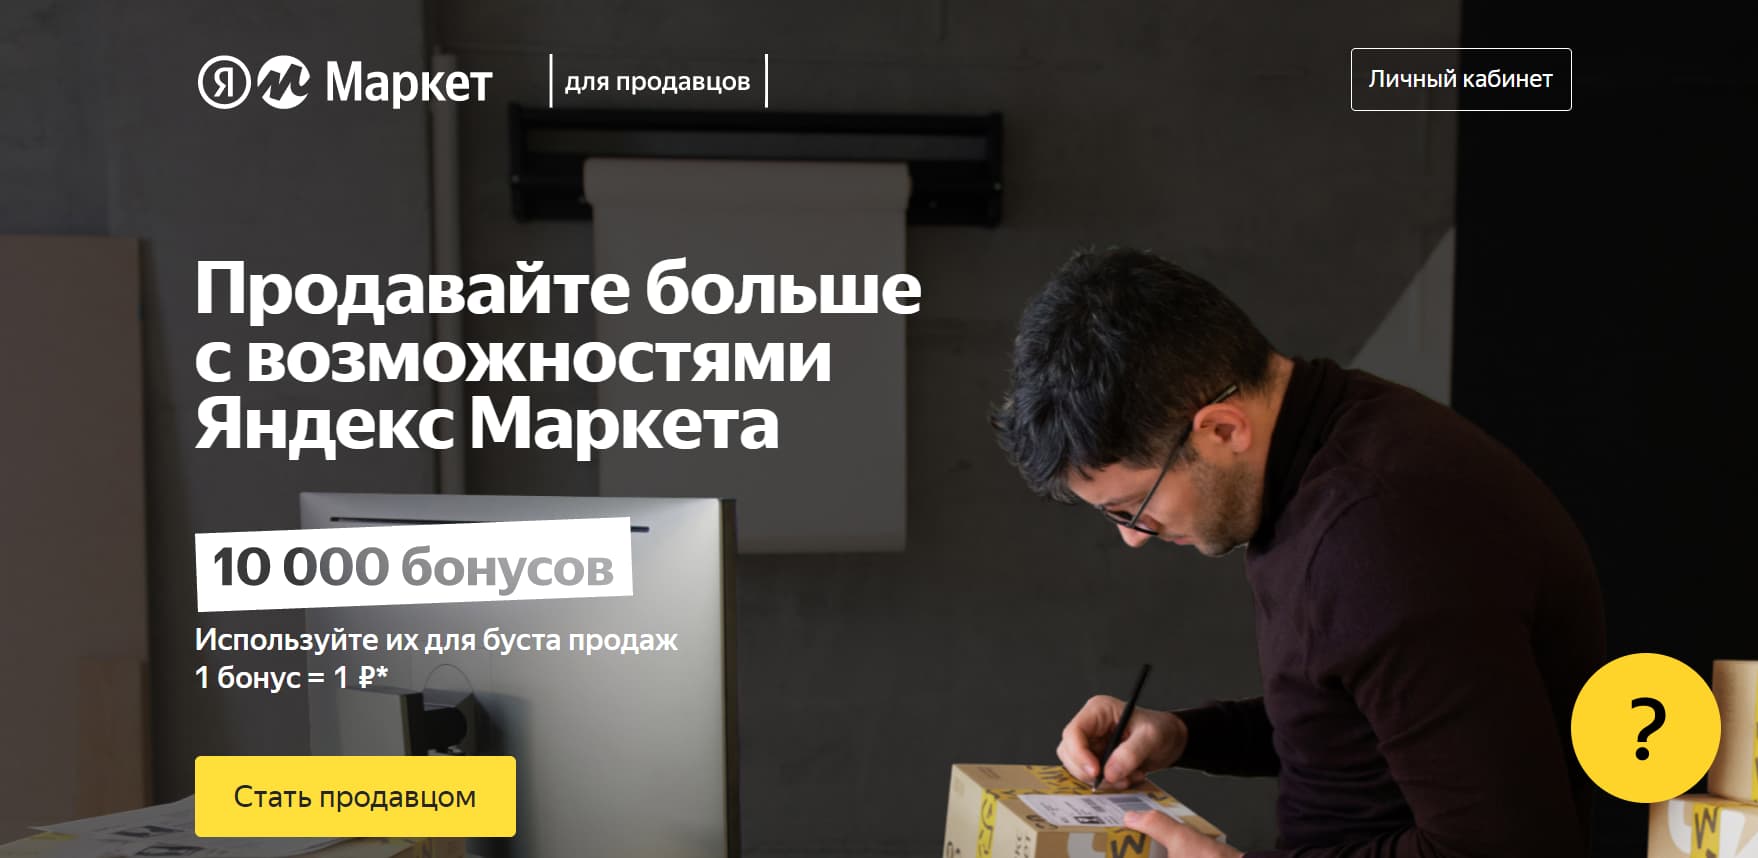 Как зарегистрироваться на Яндекс Маркете шаг 1